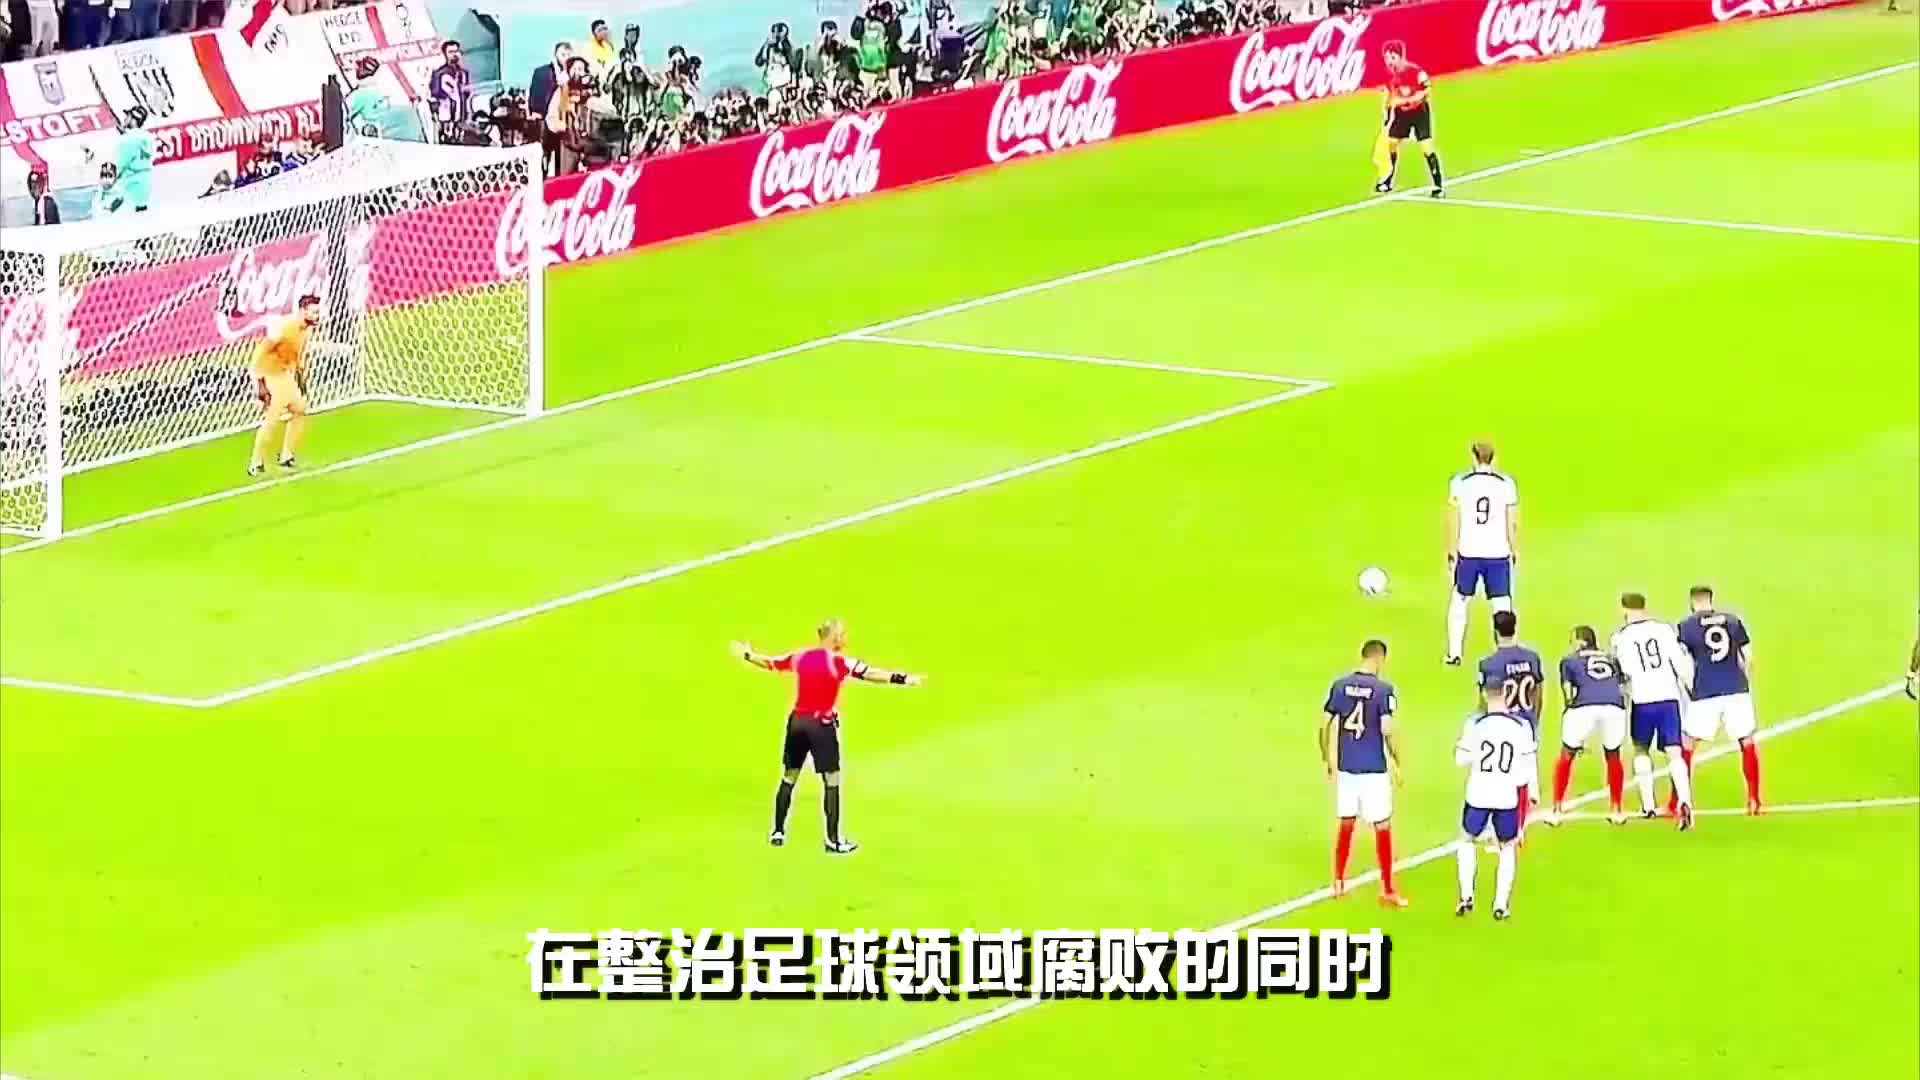 揭秘中国足球腐败:曙光初现,引领希望!